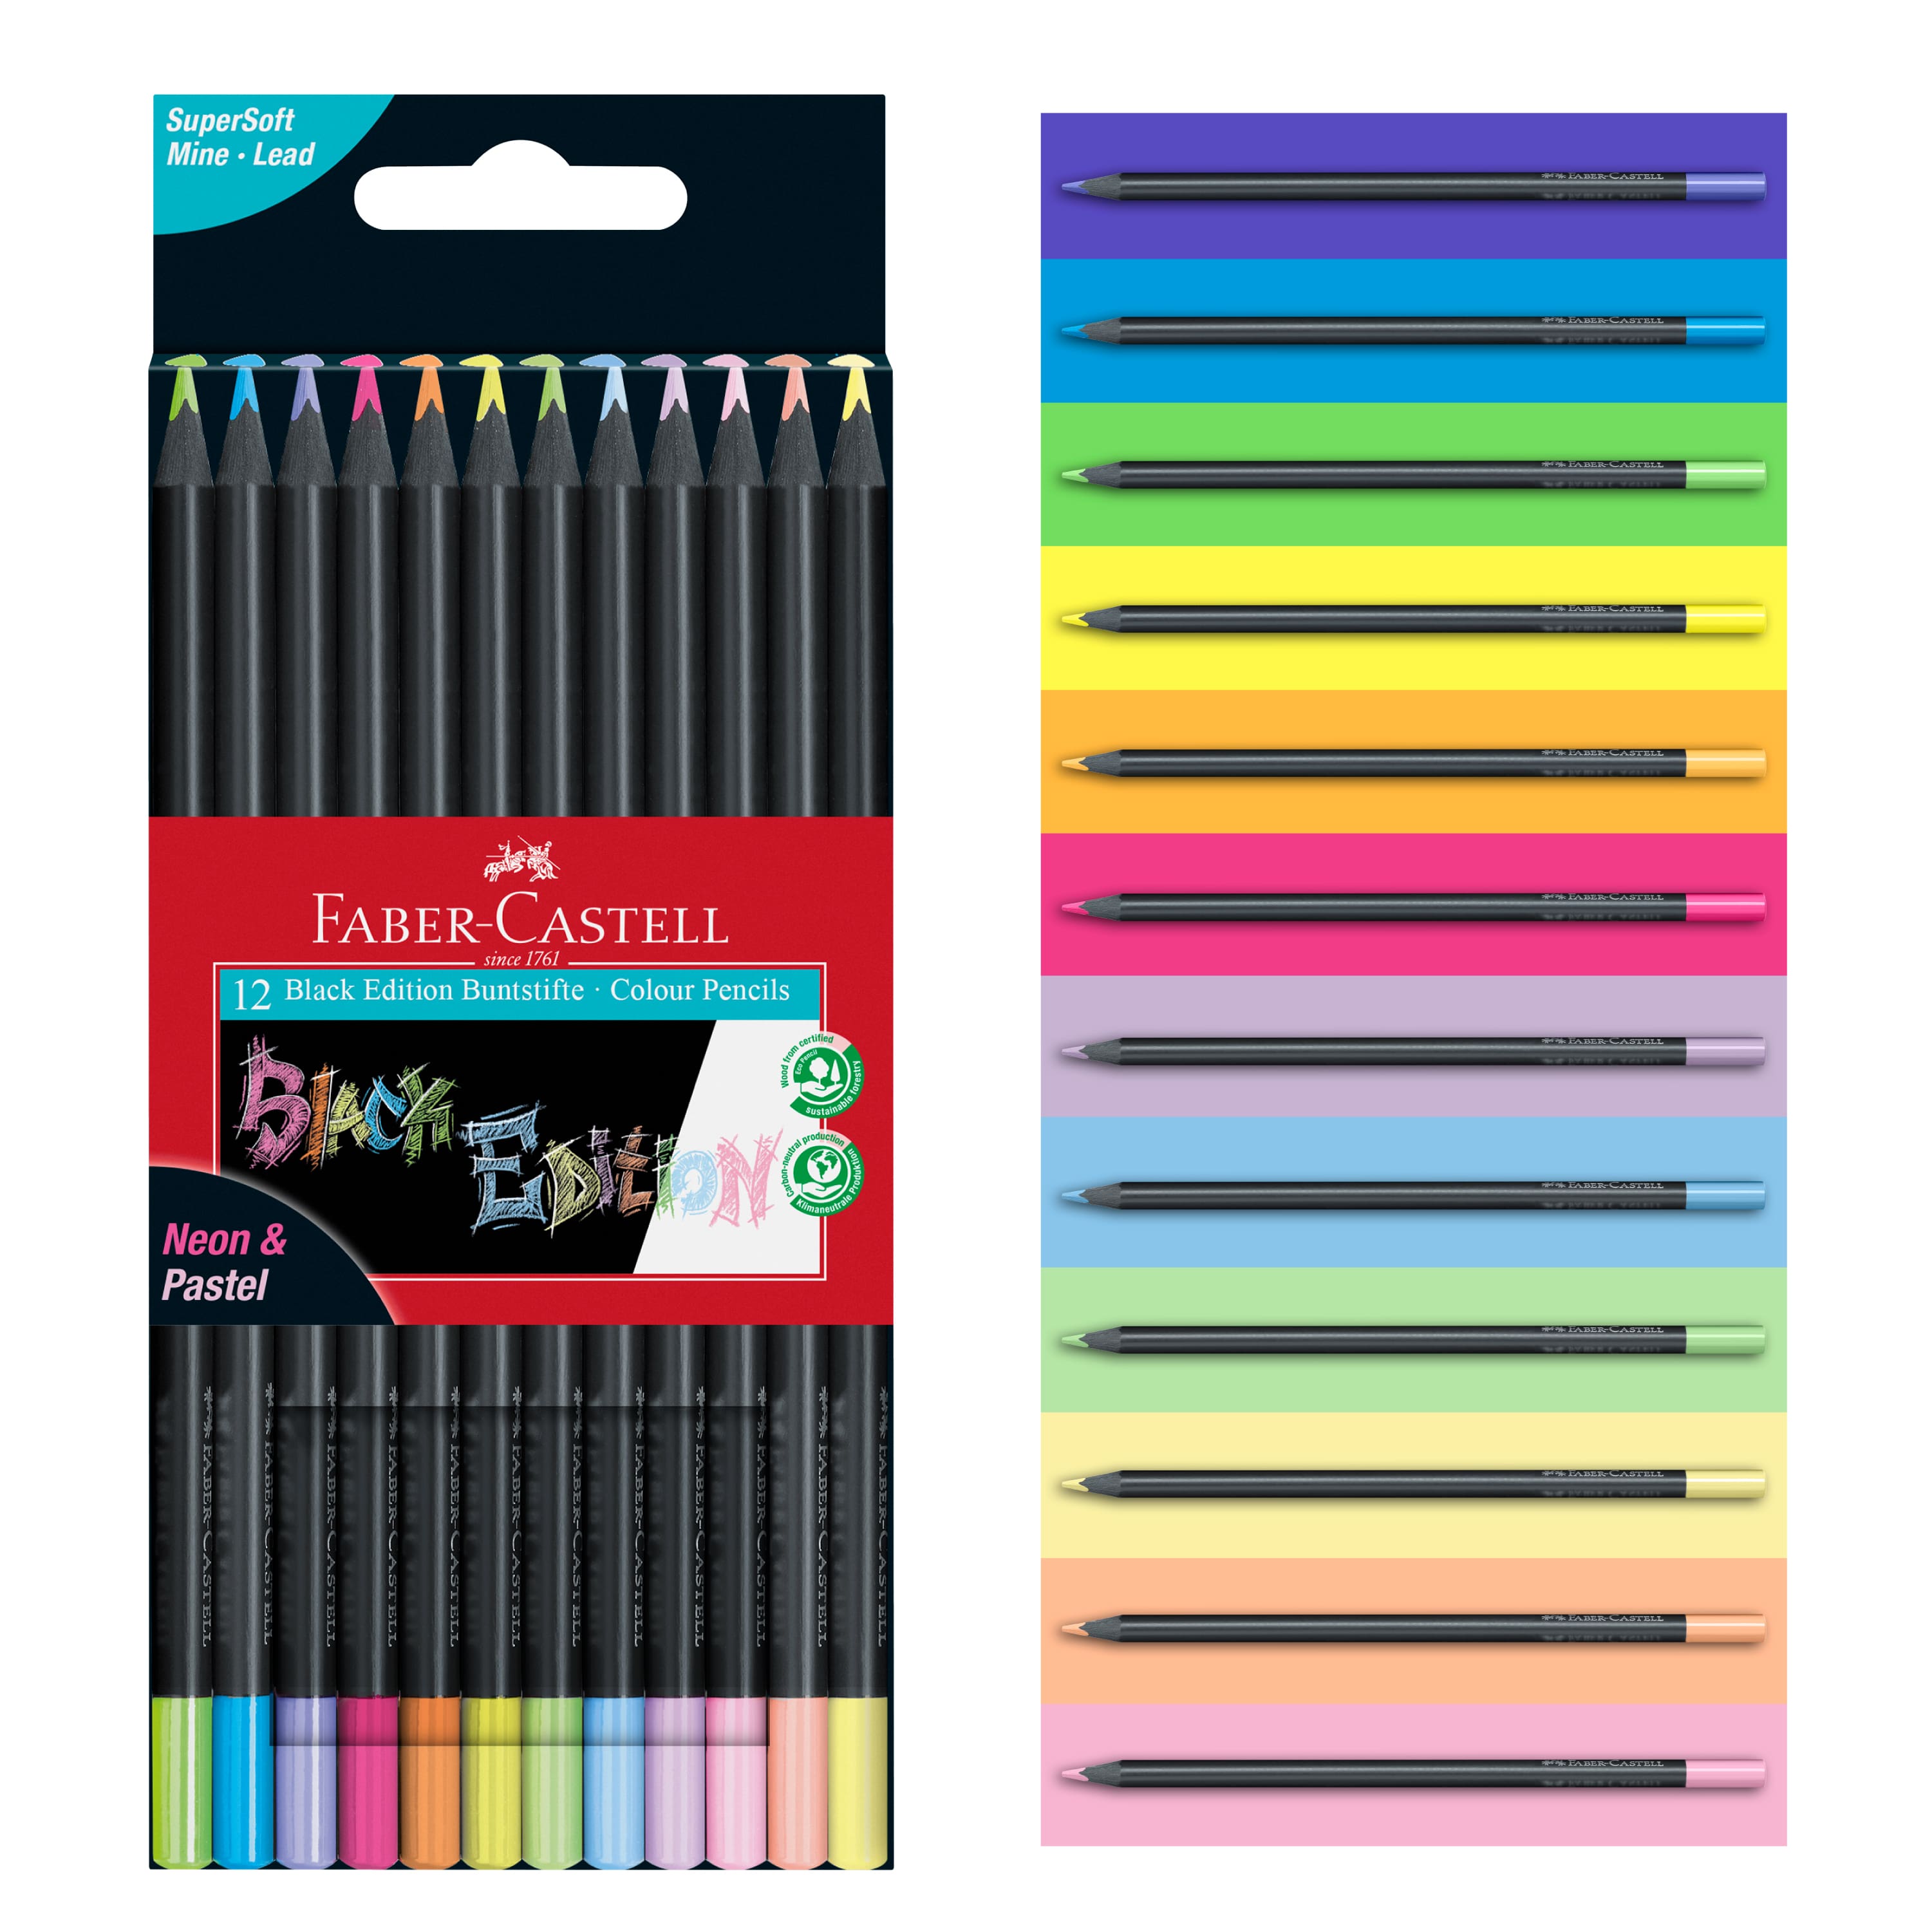 Faber Castell Pastel Pencils - S&S Wholesale